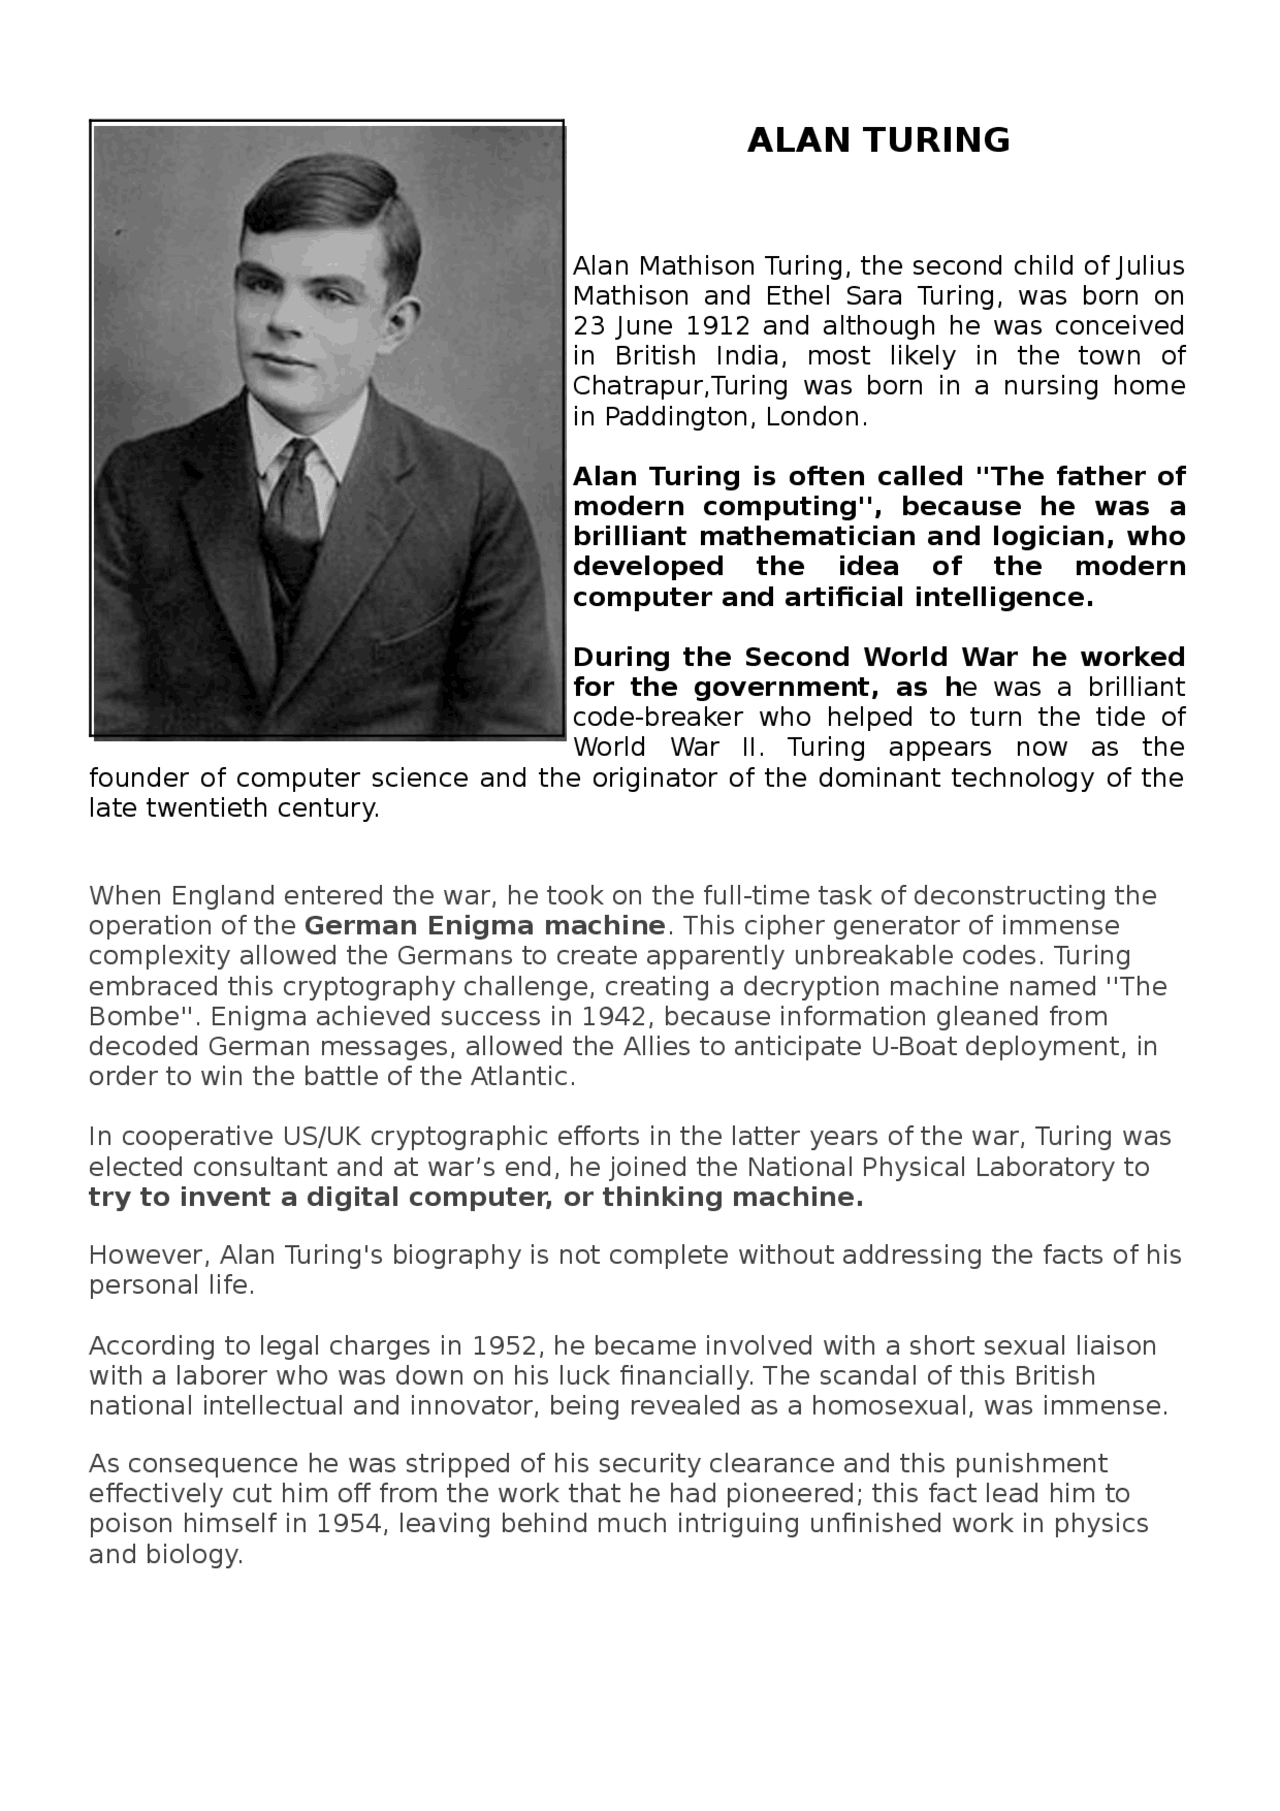  Biografi om Alan Turing